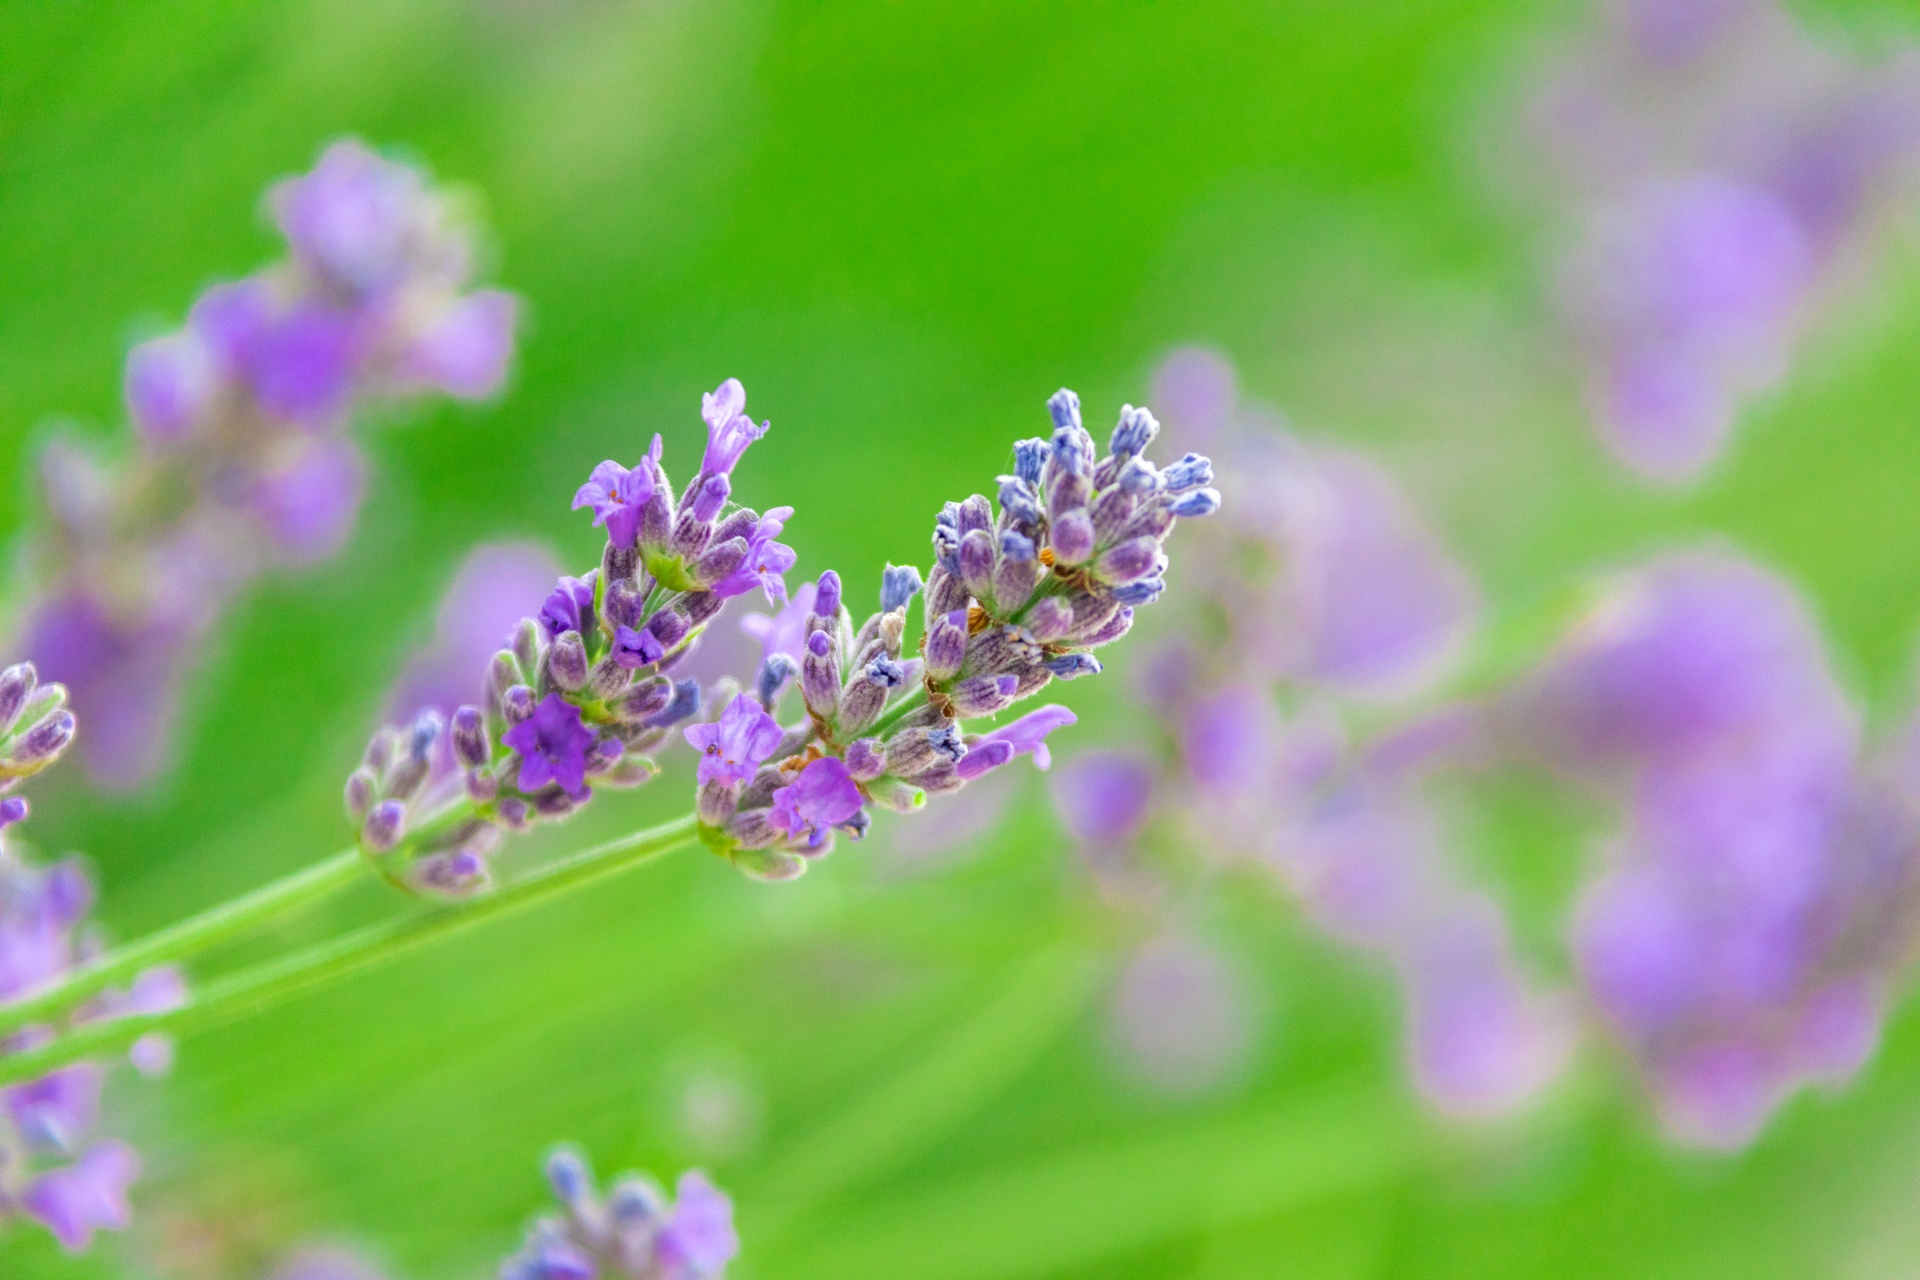 Flowering lavender flowers